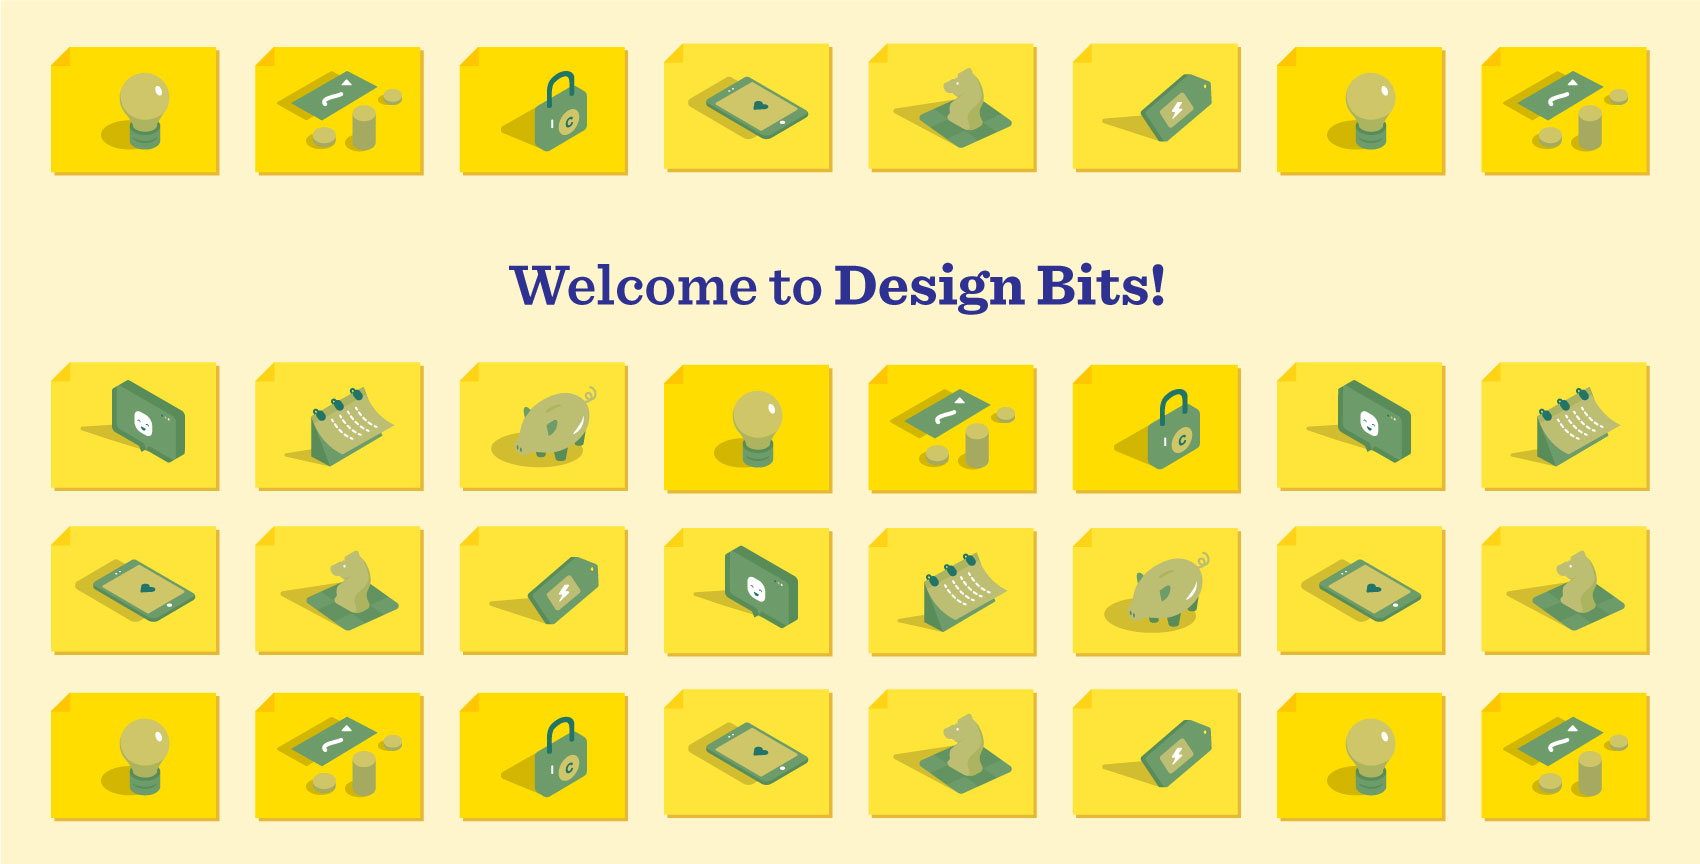 Design Bits online course